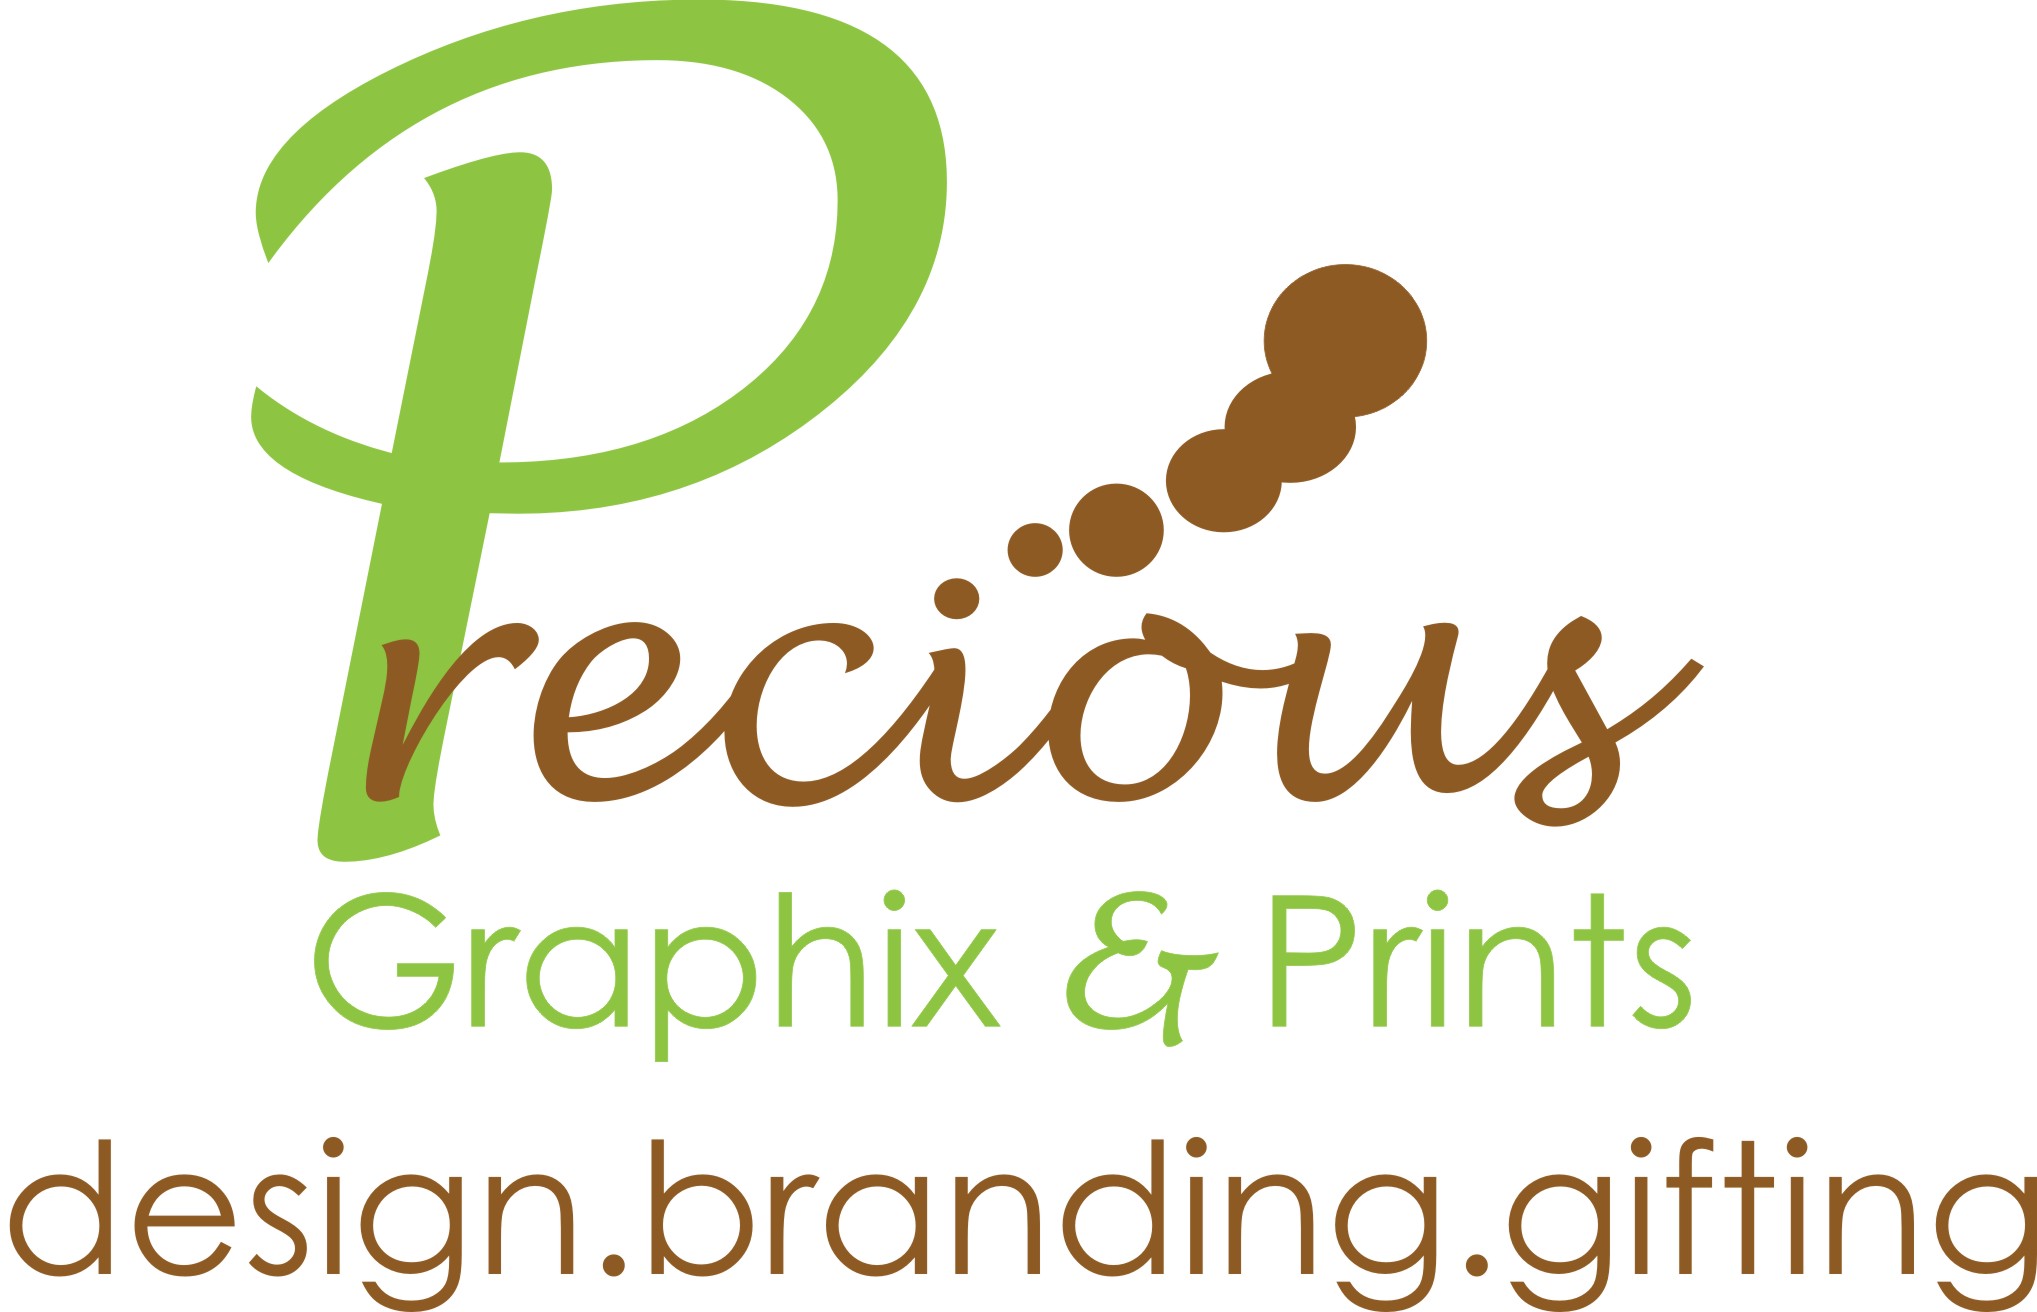 Precious Graphix and Prints logo